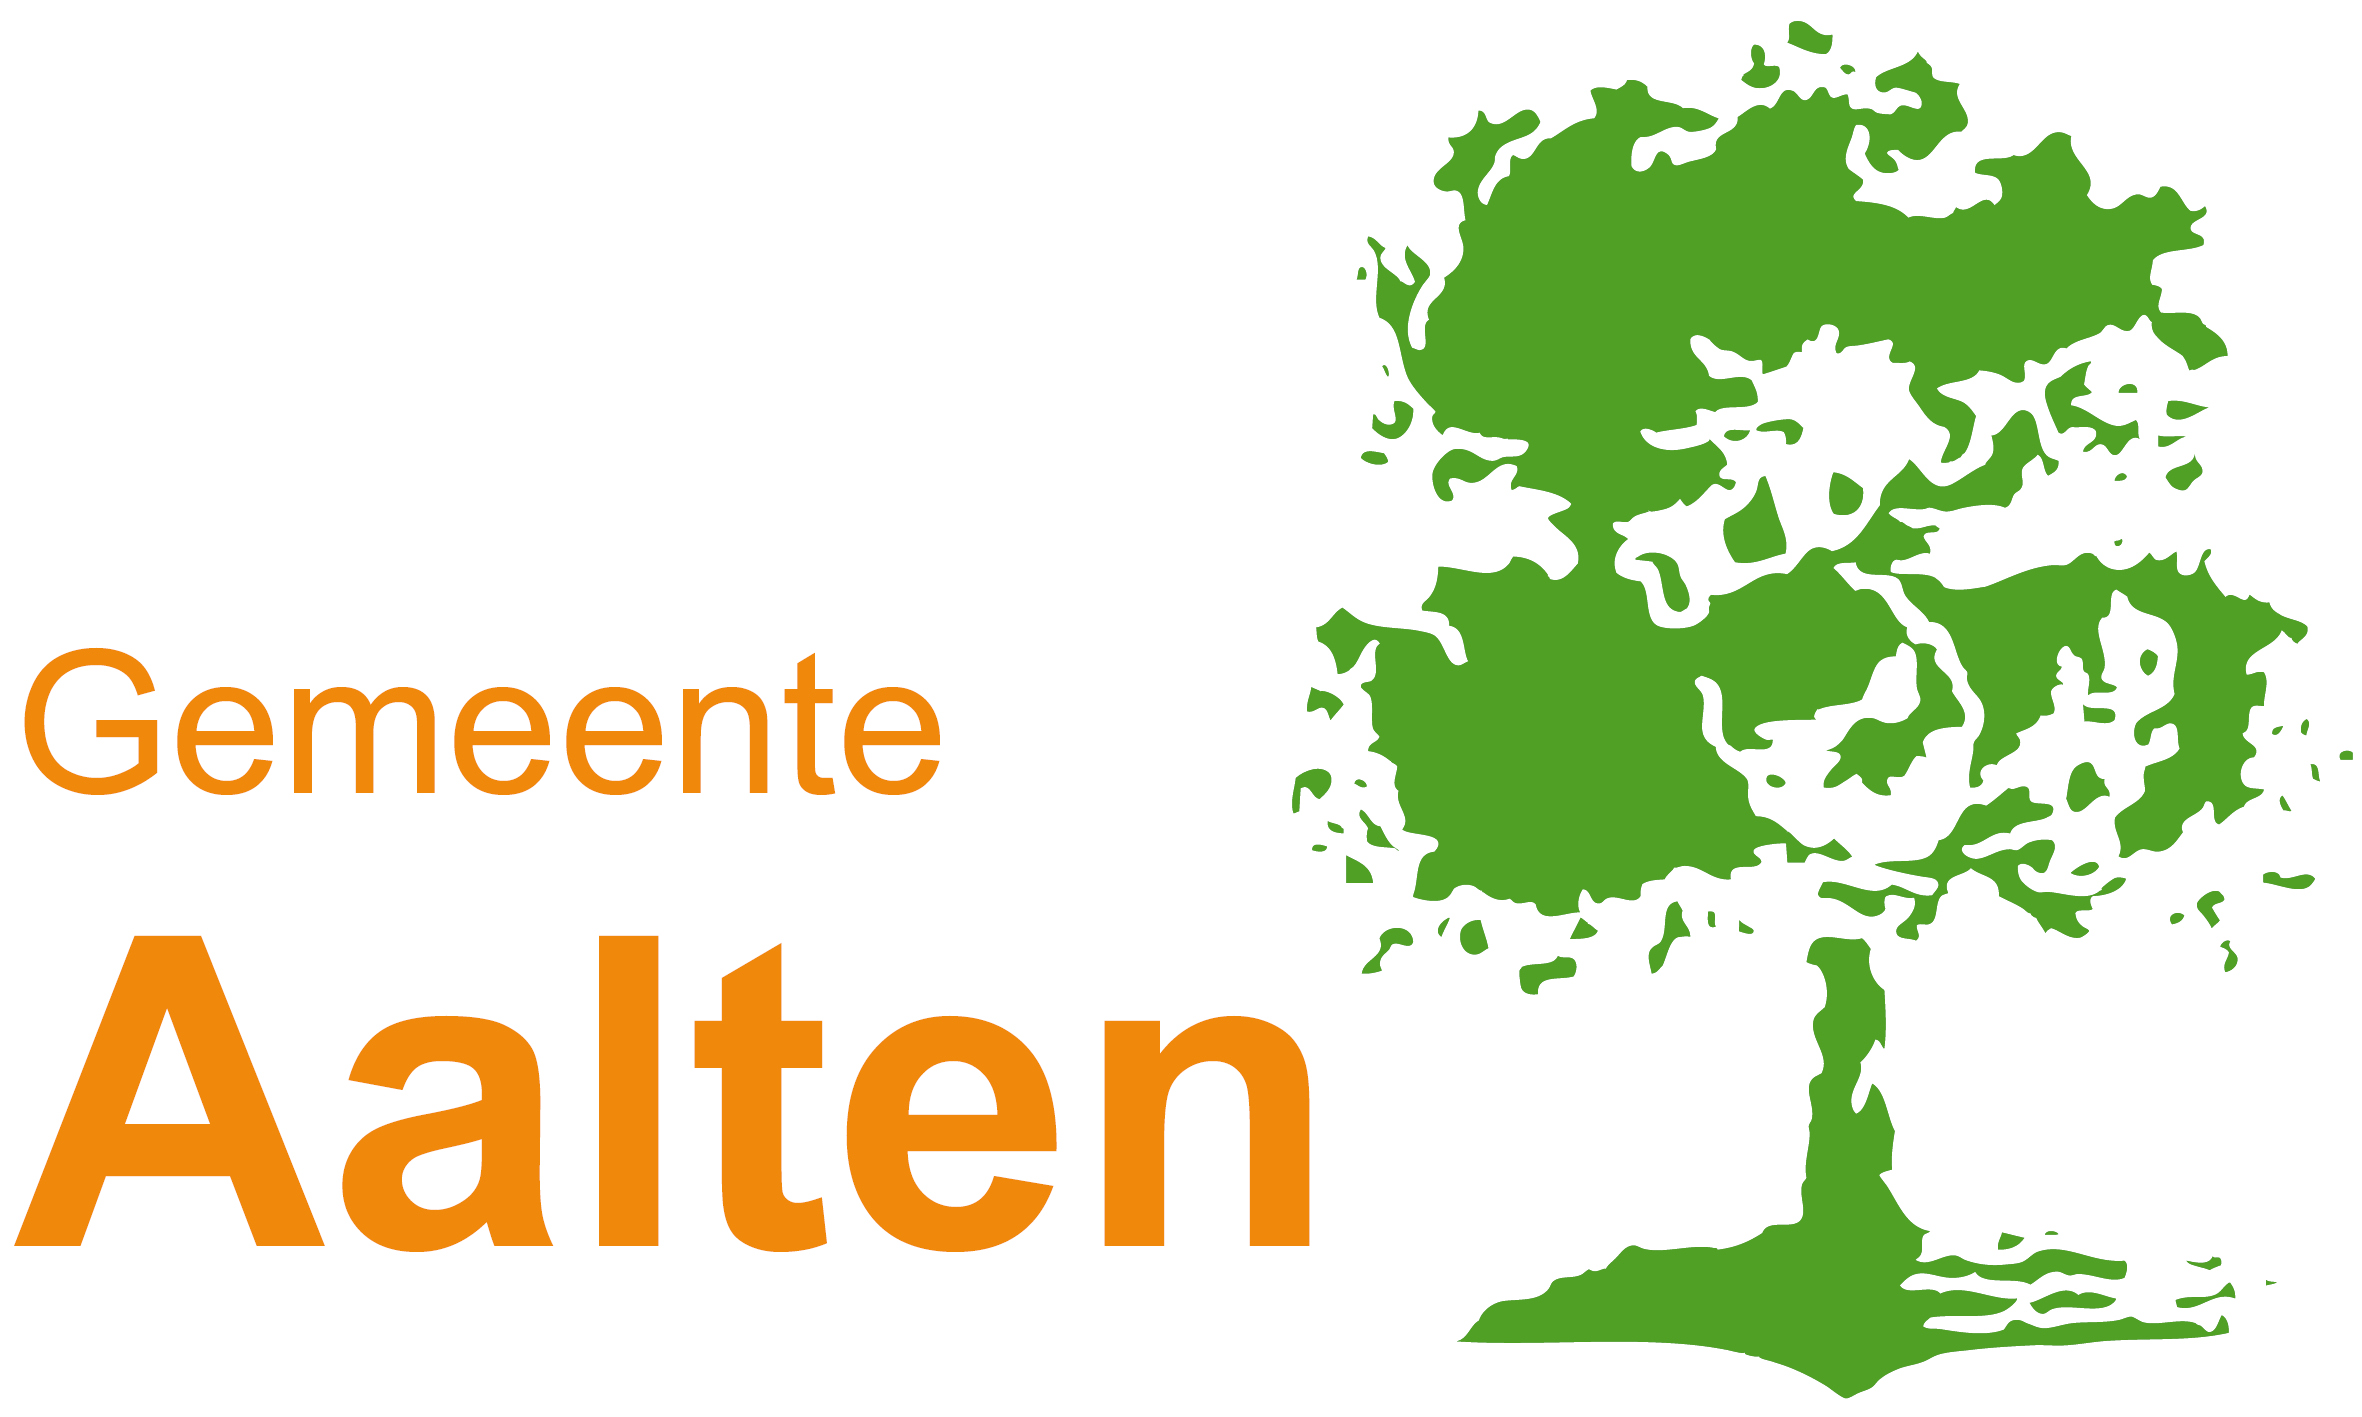 GEMEENTEBLAD Officiële uitgave van gemeente Aalten. Nr. 51457 26 april 2016 Marktverordening weekmarkt Aalten 2016 De raad van de gemeente Aalten; gezien het voorstel van burgemeester en wethouders d.